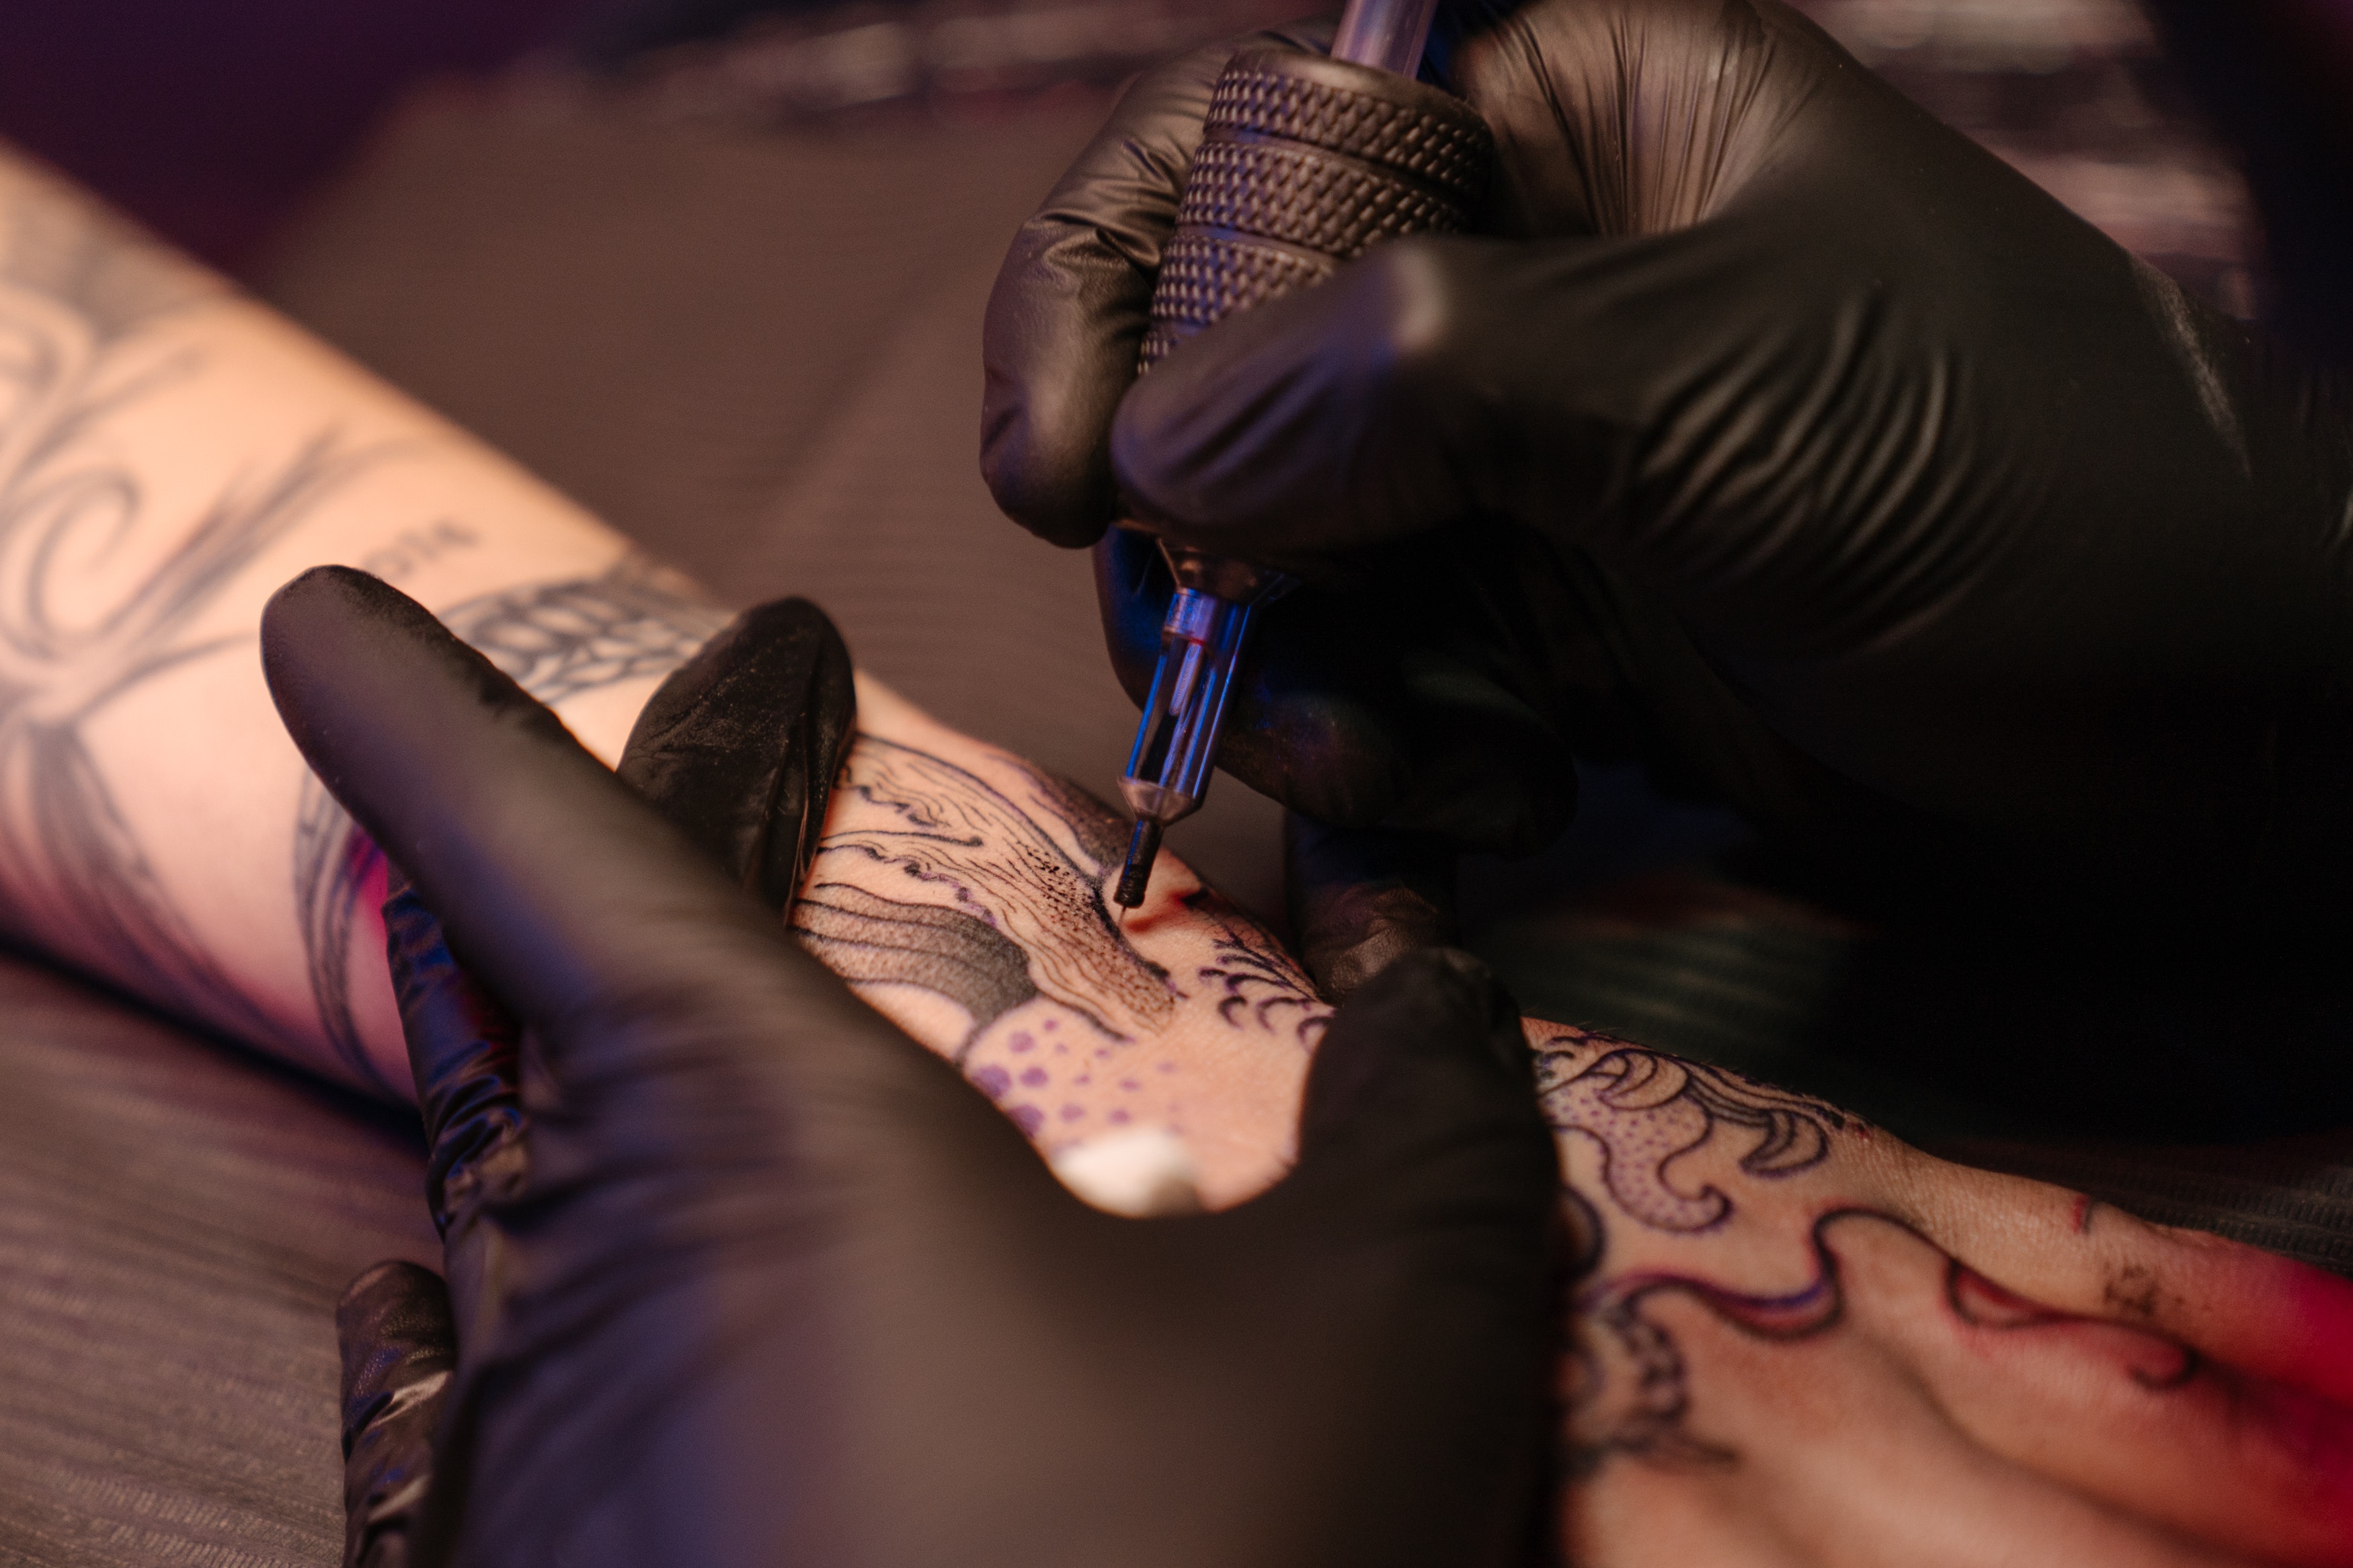 worst tattoos - tattoo fails - female tattoo artist - A